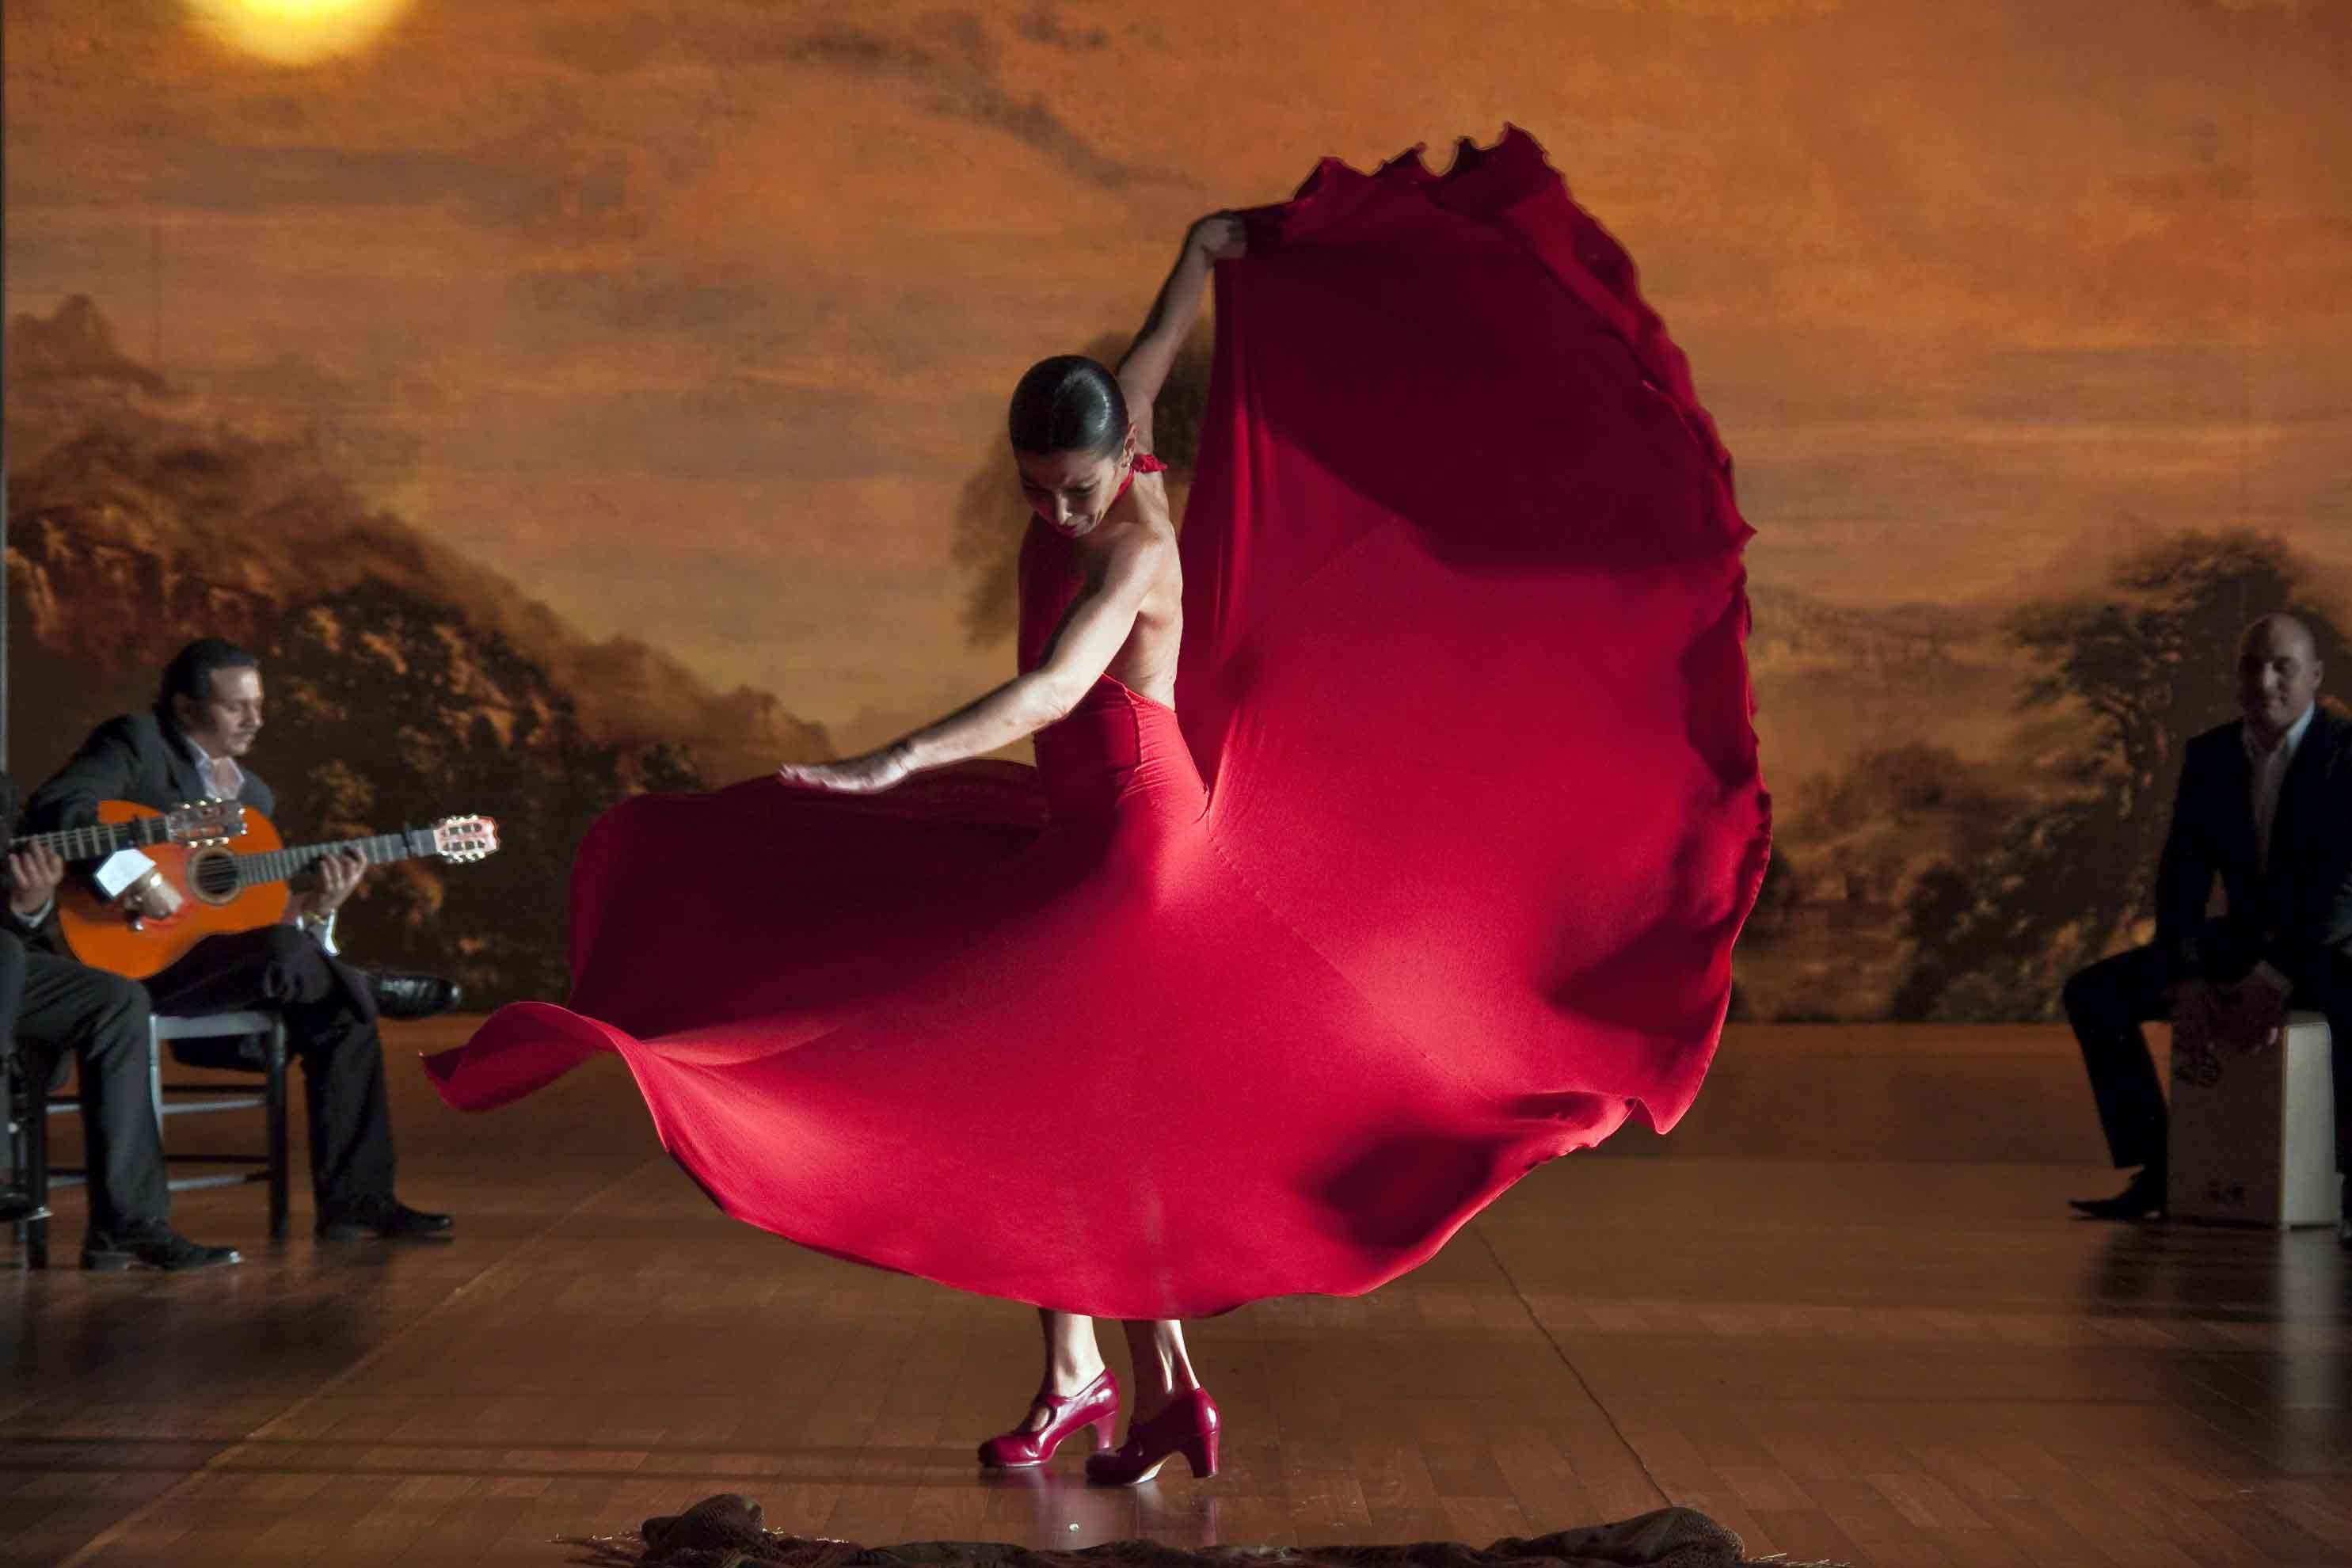 ミニシアターに行こう ミニシアターに行こう フラメンコ フラメンコ 本国スペインで 最高の芸術作品 と賞されるフラメンコ映画の決定版 超一流アーティスト達がセッションする魅惑と官能のステージ